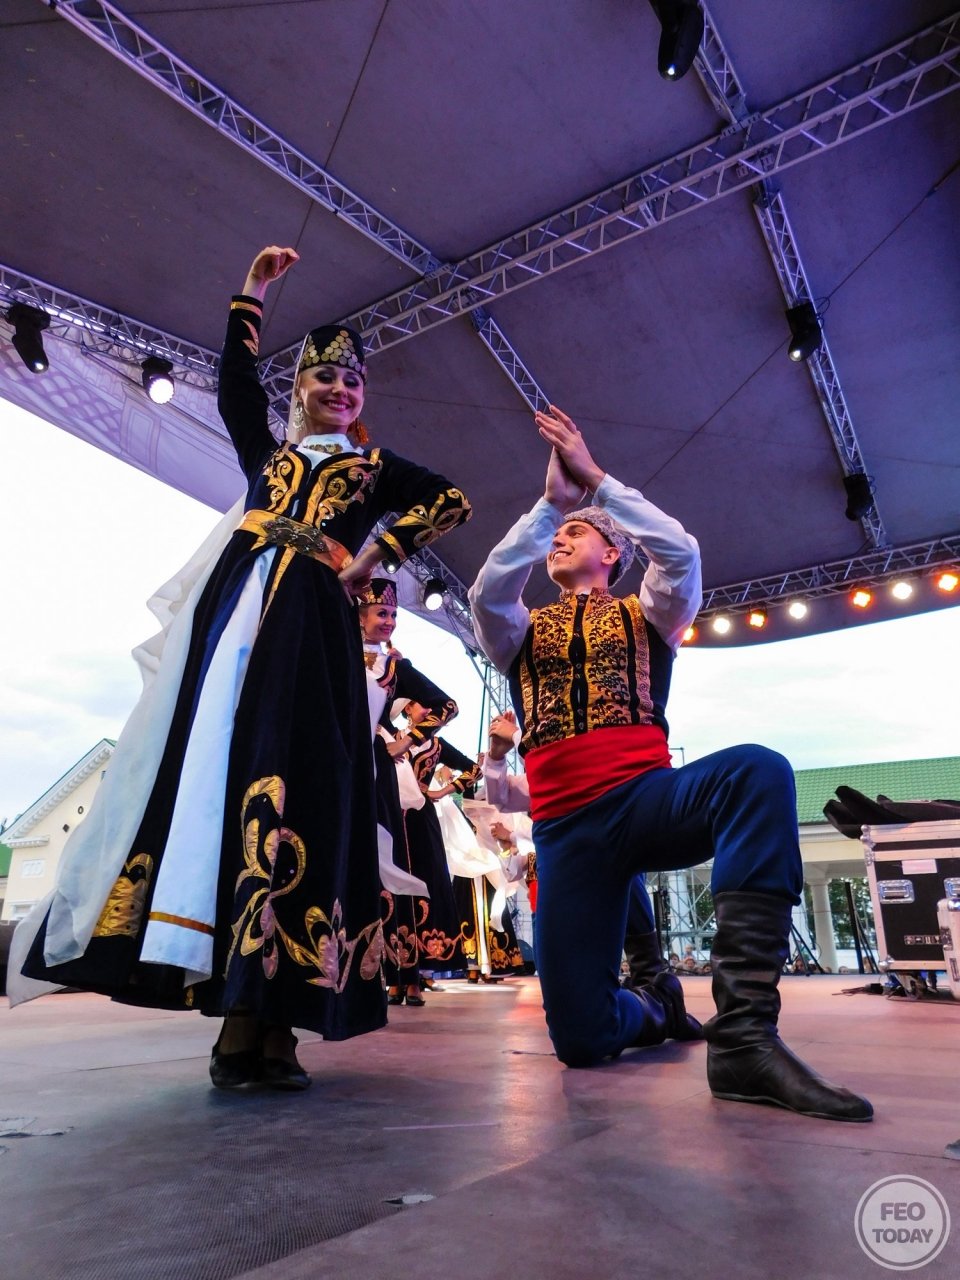 Фото концерта на День города 2017 и юбилей Айвазовского в Феодосии #2116